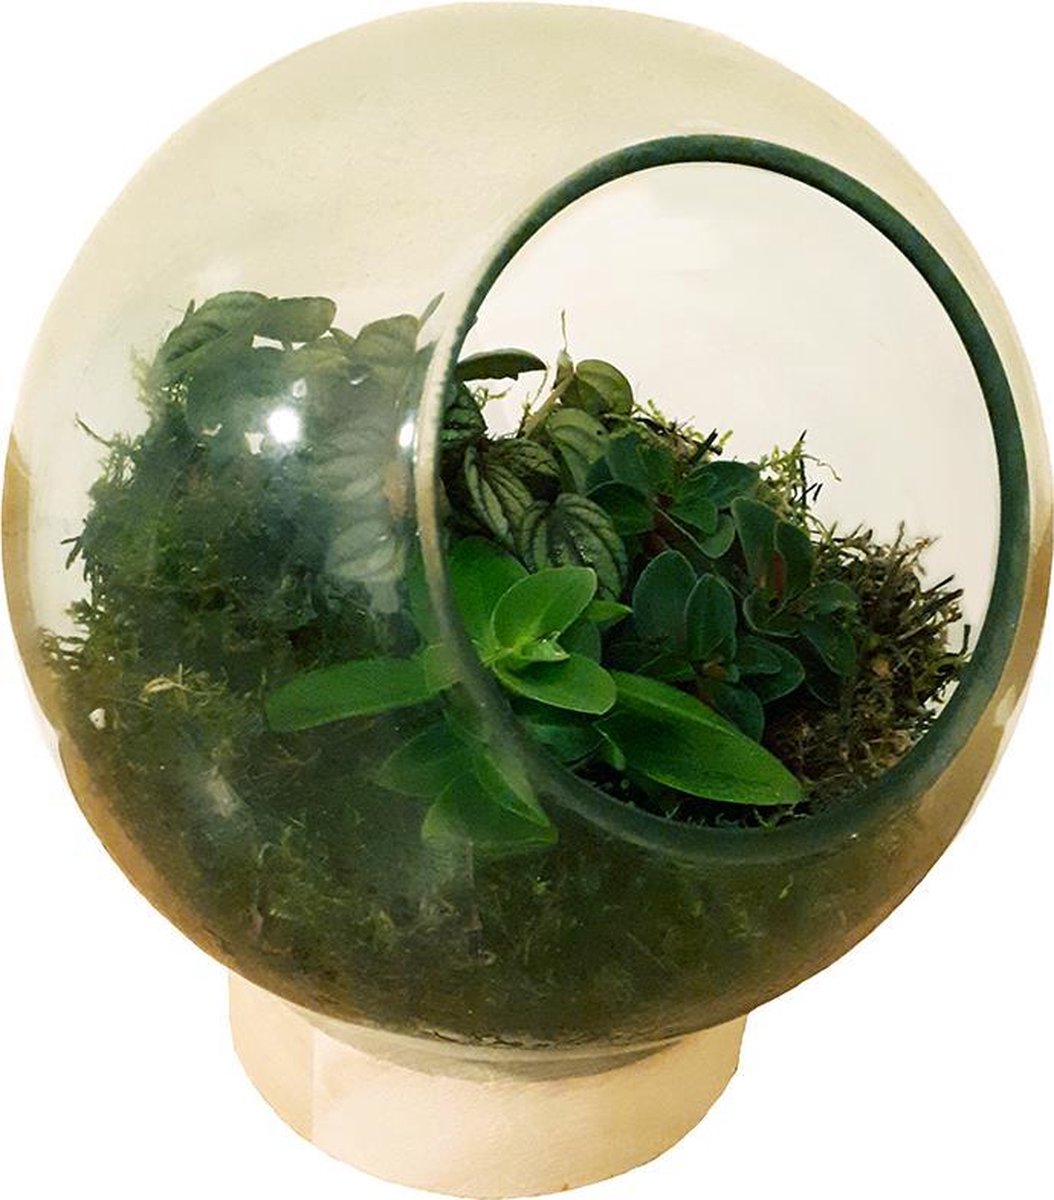 Glazen bol met 3 mini plantjes en mos. Ecosysteem voor planten. | bol